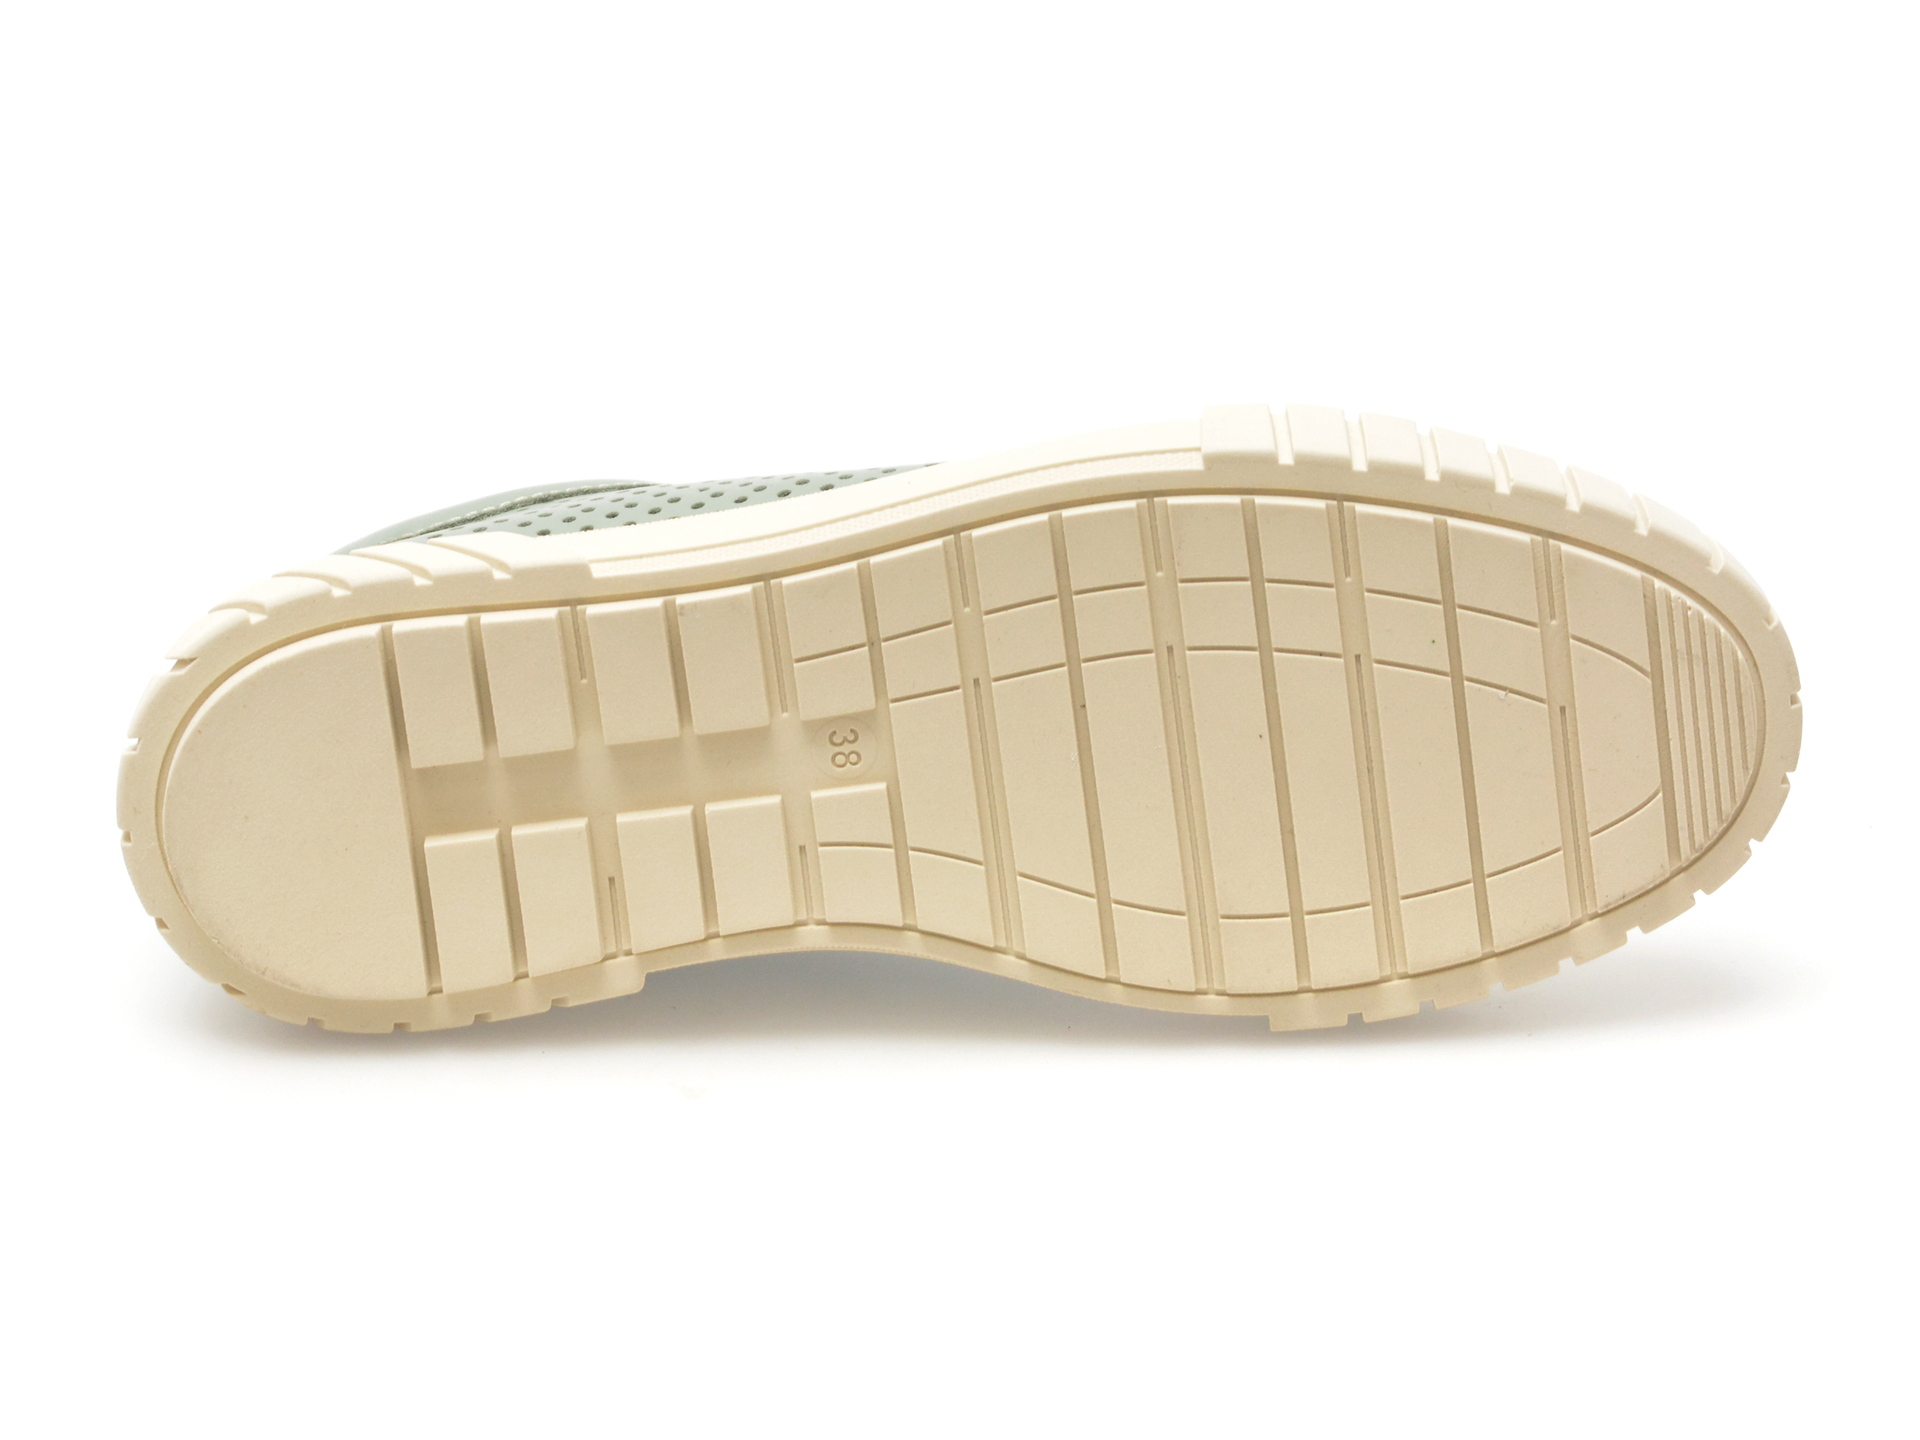 Pantofi GOLD DEER verzi, 1187062, din piele naturala